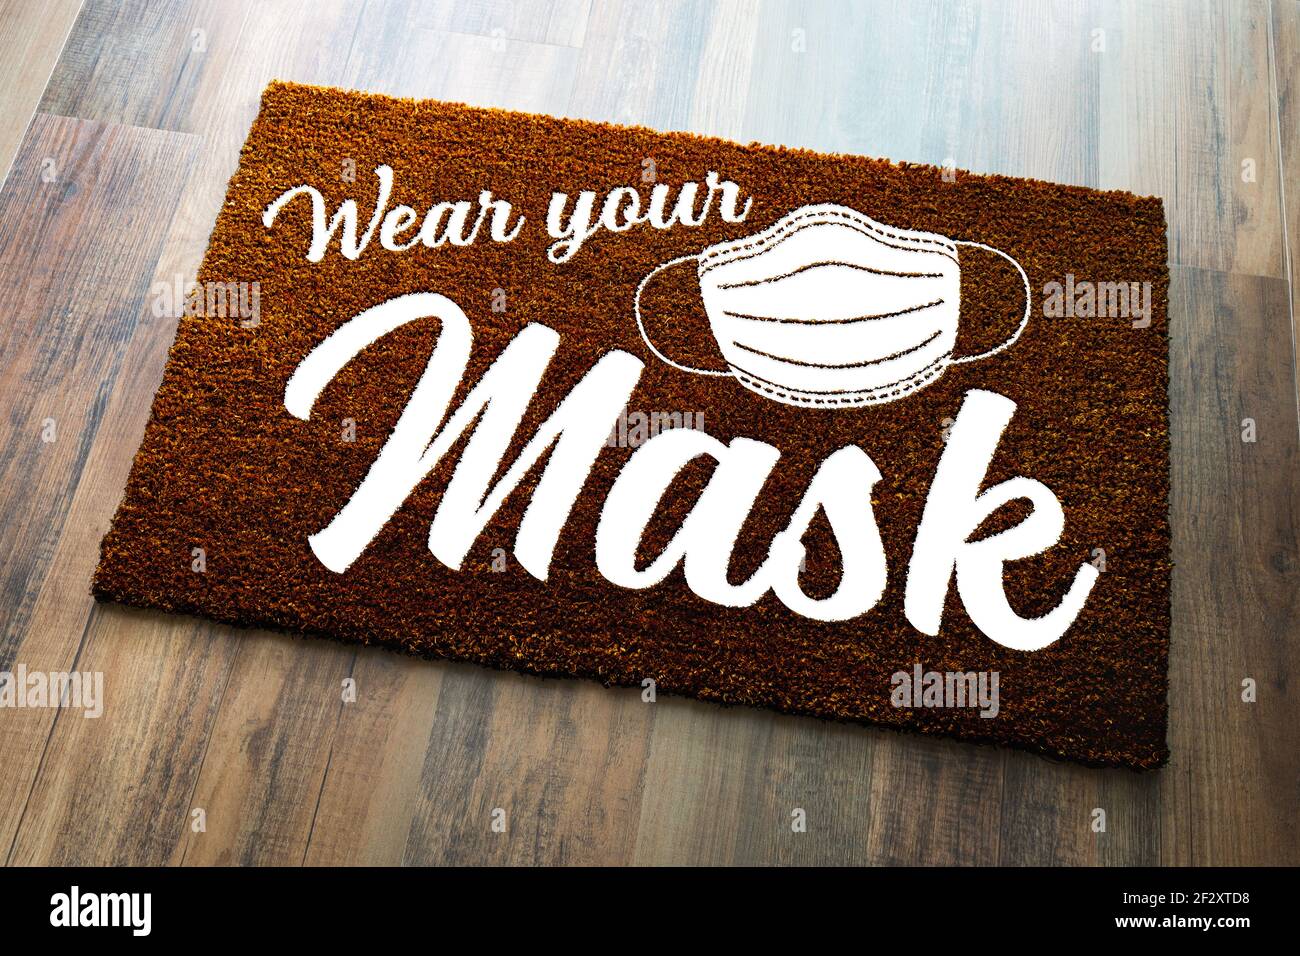 Wear Your Mask Welcome Door Mat on Wood Floor. Stock Photo